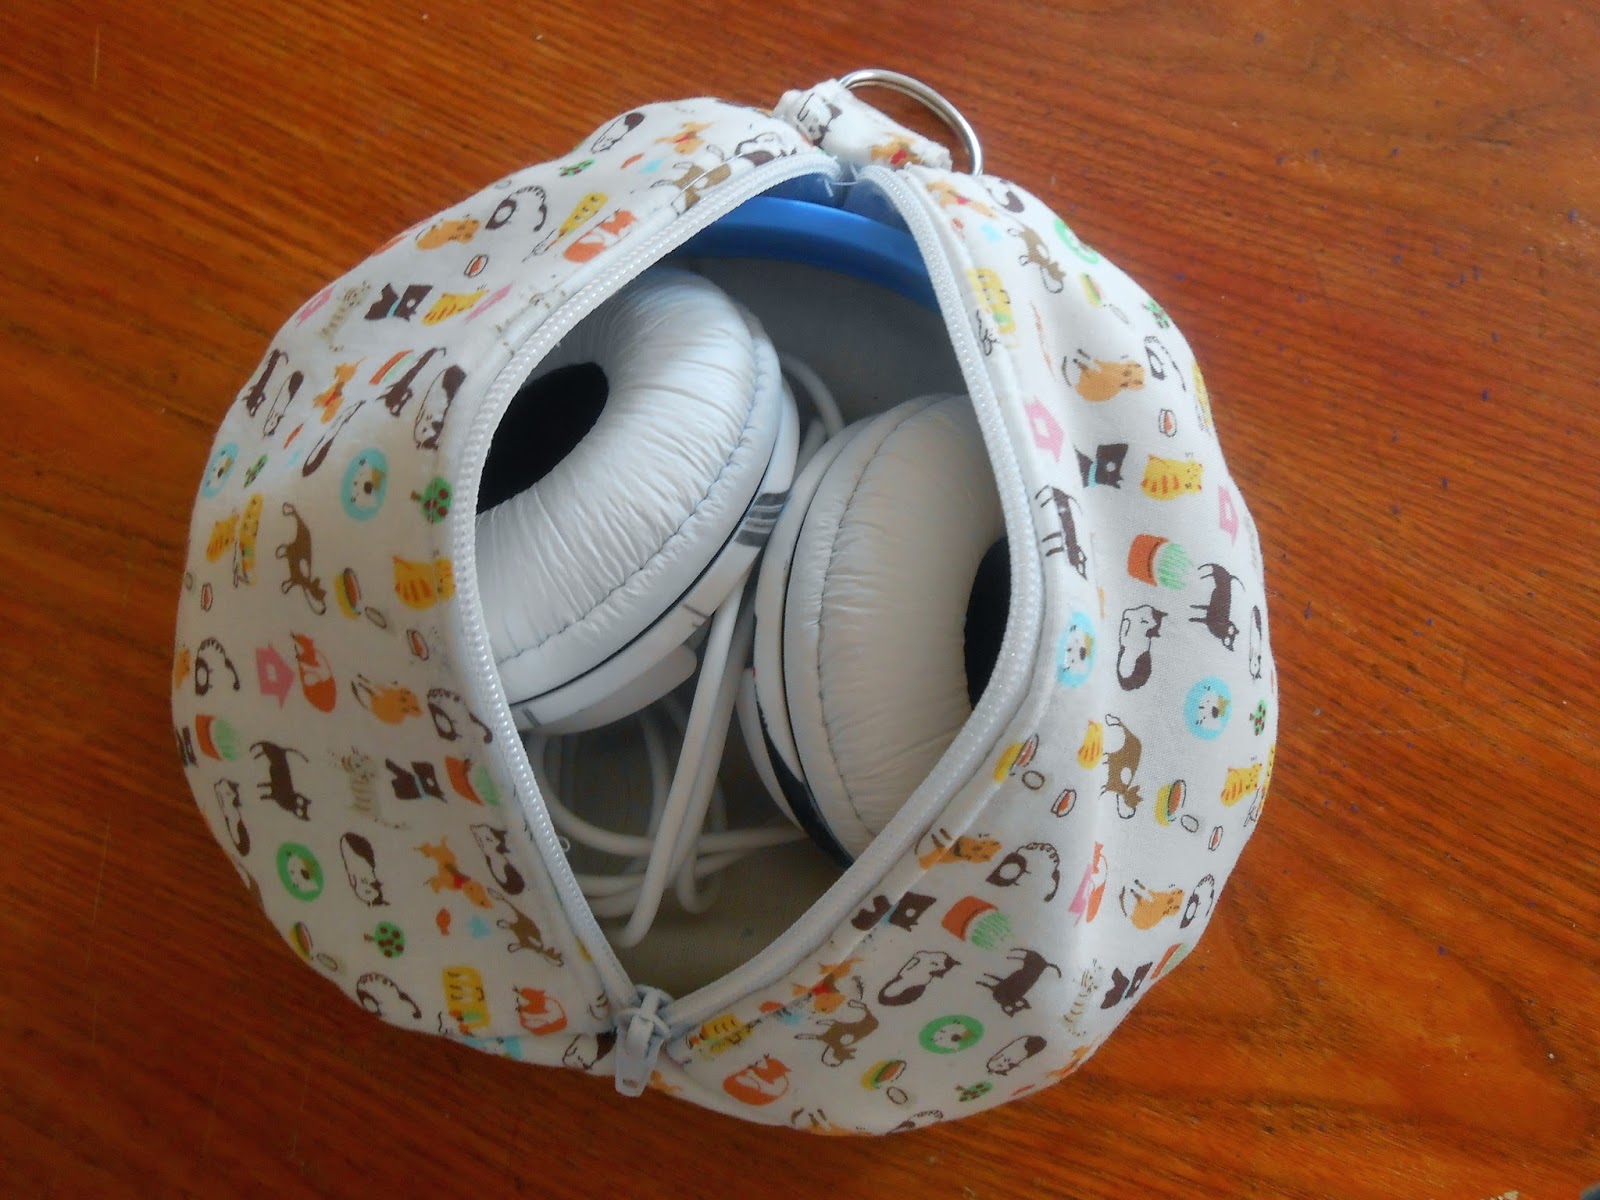 les loisirs de patouch: Petite pochette pour ranger un casque audio